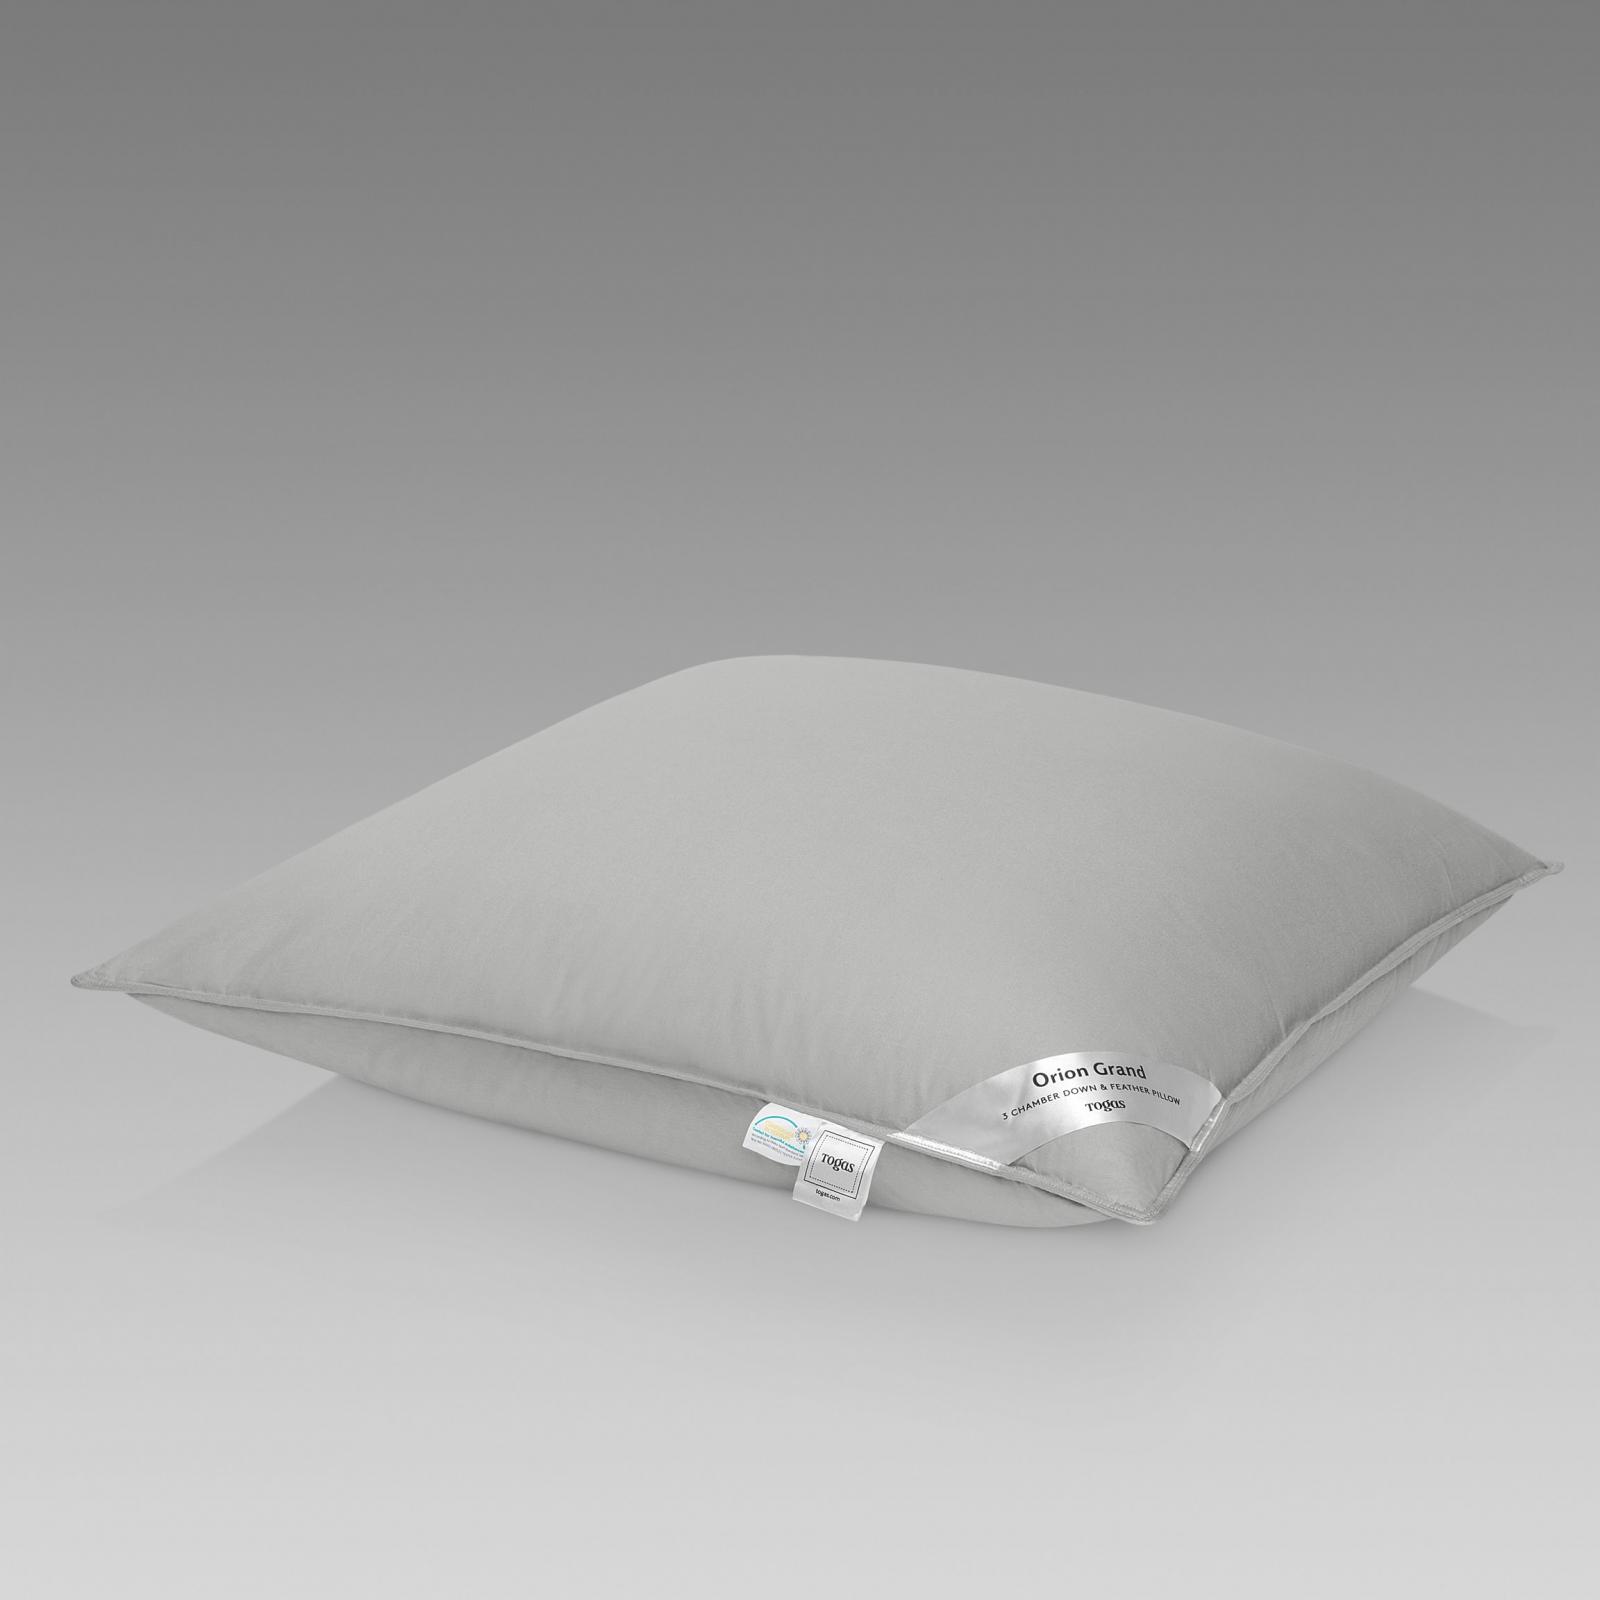 Подушка Togas Орион Гранд серая 70х70 см (20.05.19.0041) подушка togas кайзер белая 70х70 см 20 05 19 0046